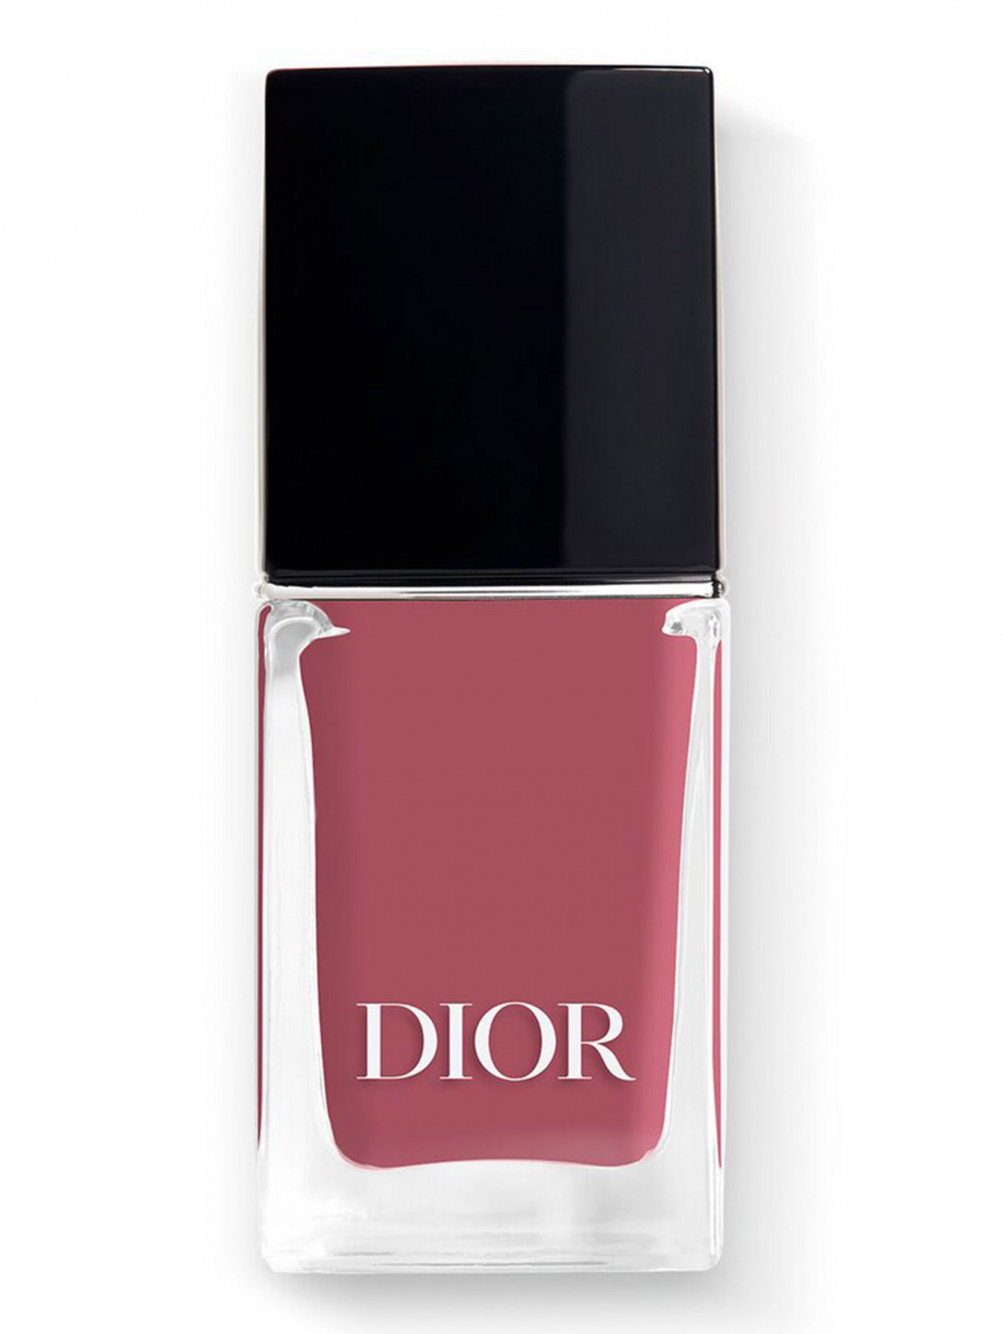 Лак для ногтей с эффектом гелевого покрытия Dior Vernis, 558 Грация, 10 мл - Общий вид